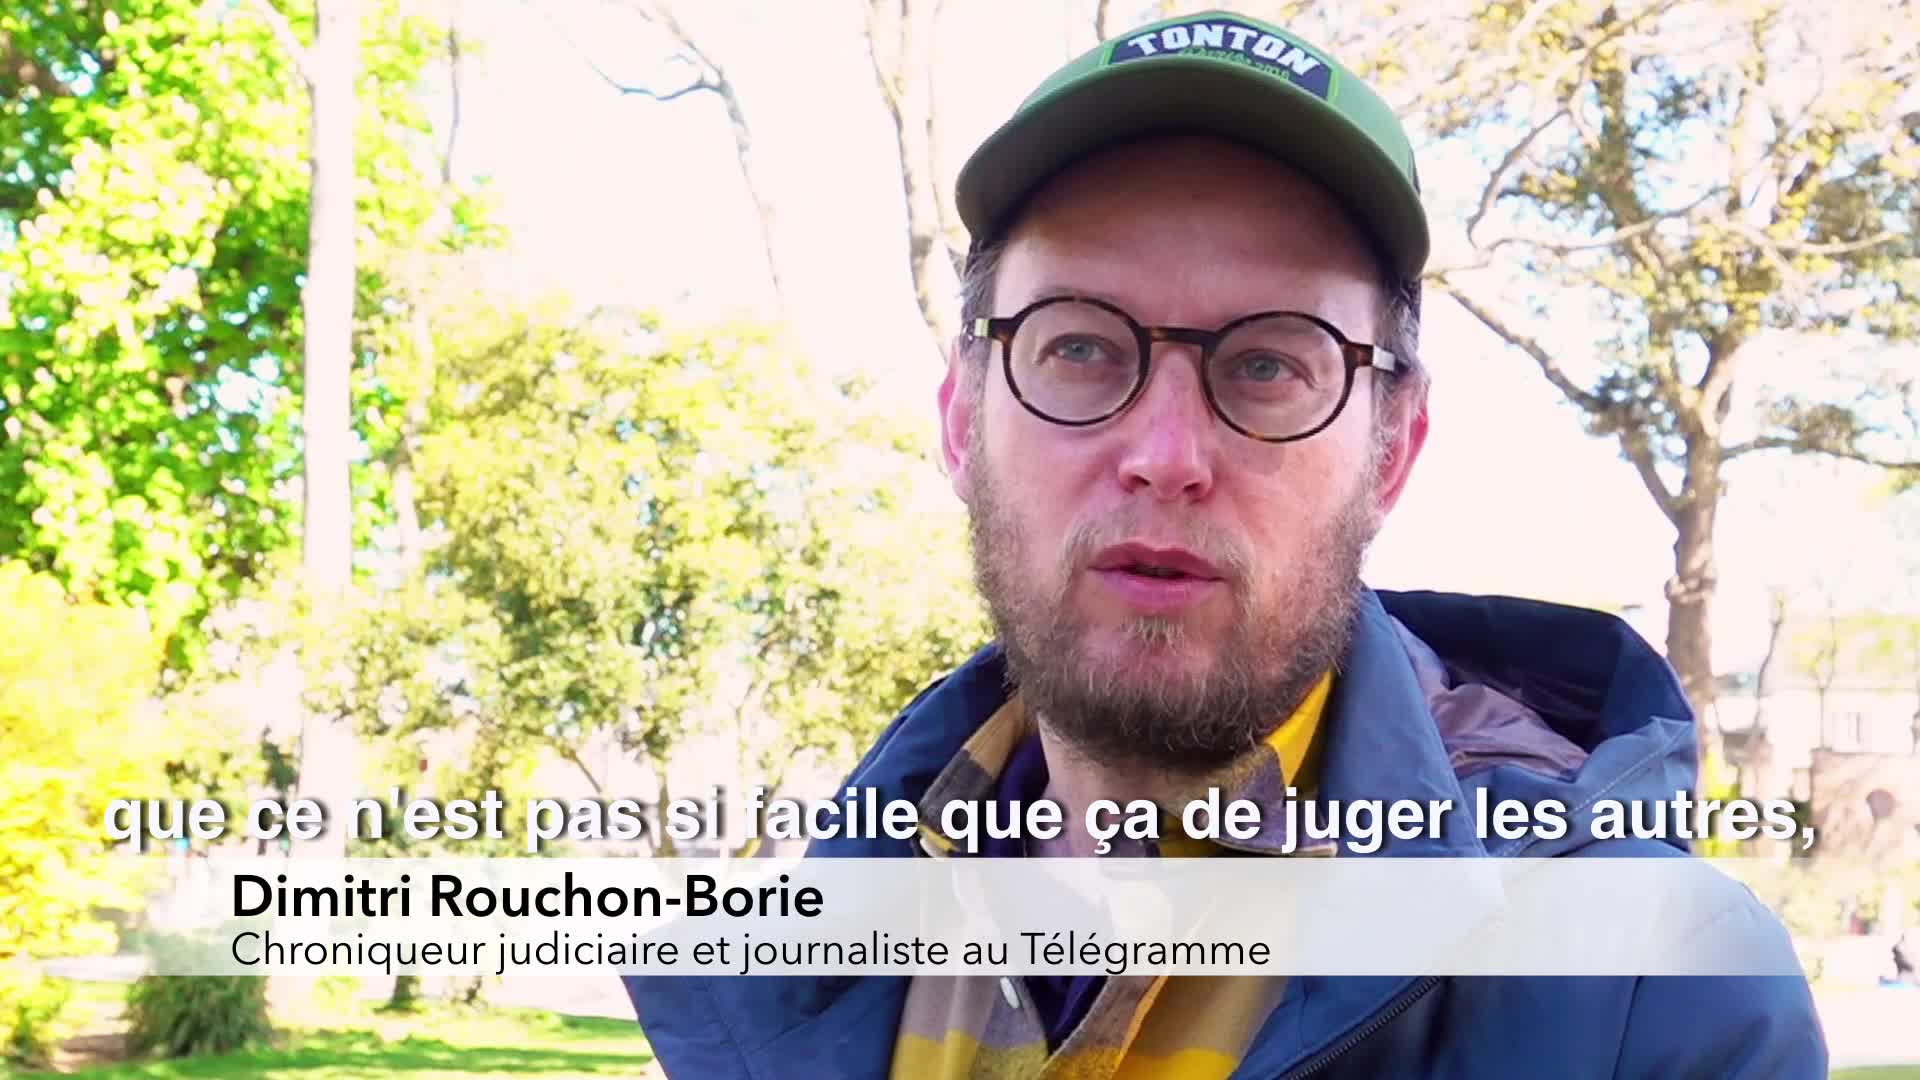 Dimitri Rouchon-Borie sélectionné pour le Goncourt du premier roman  (Tébéo-TébéSud)